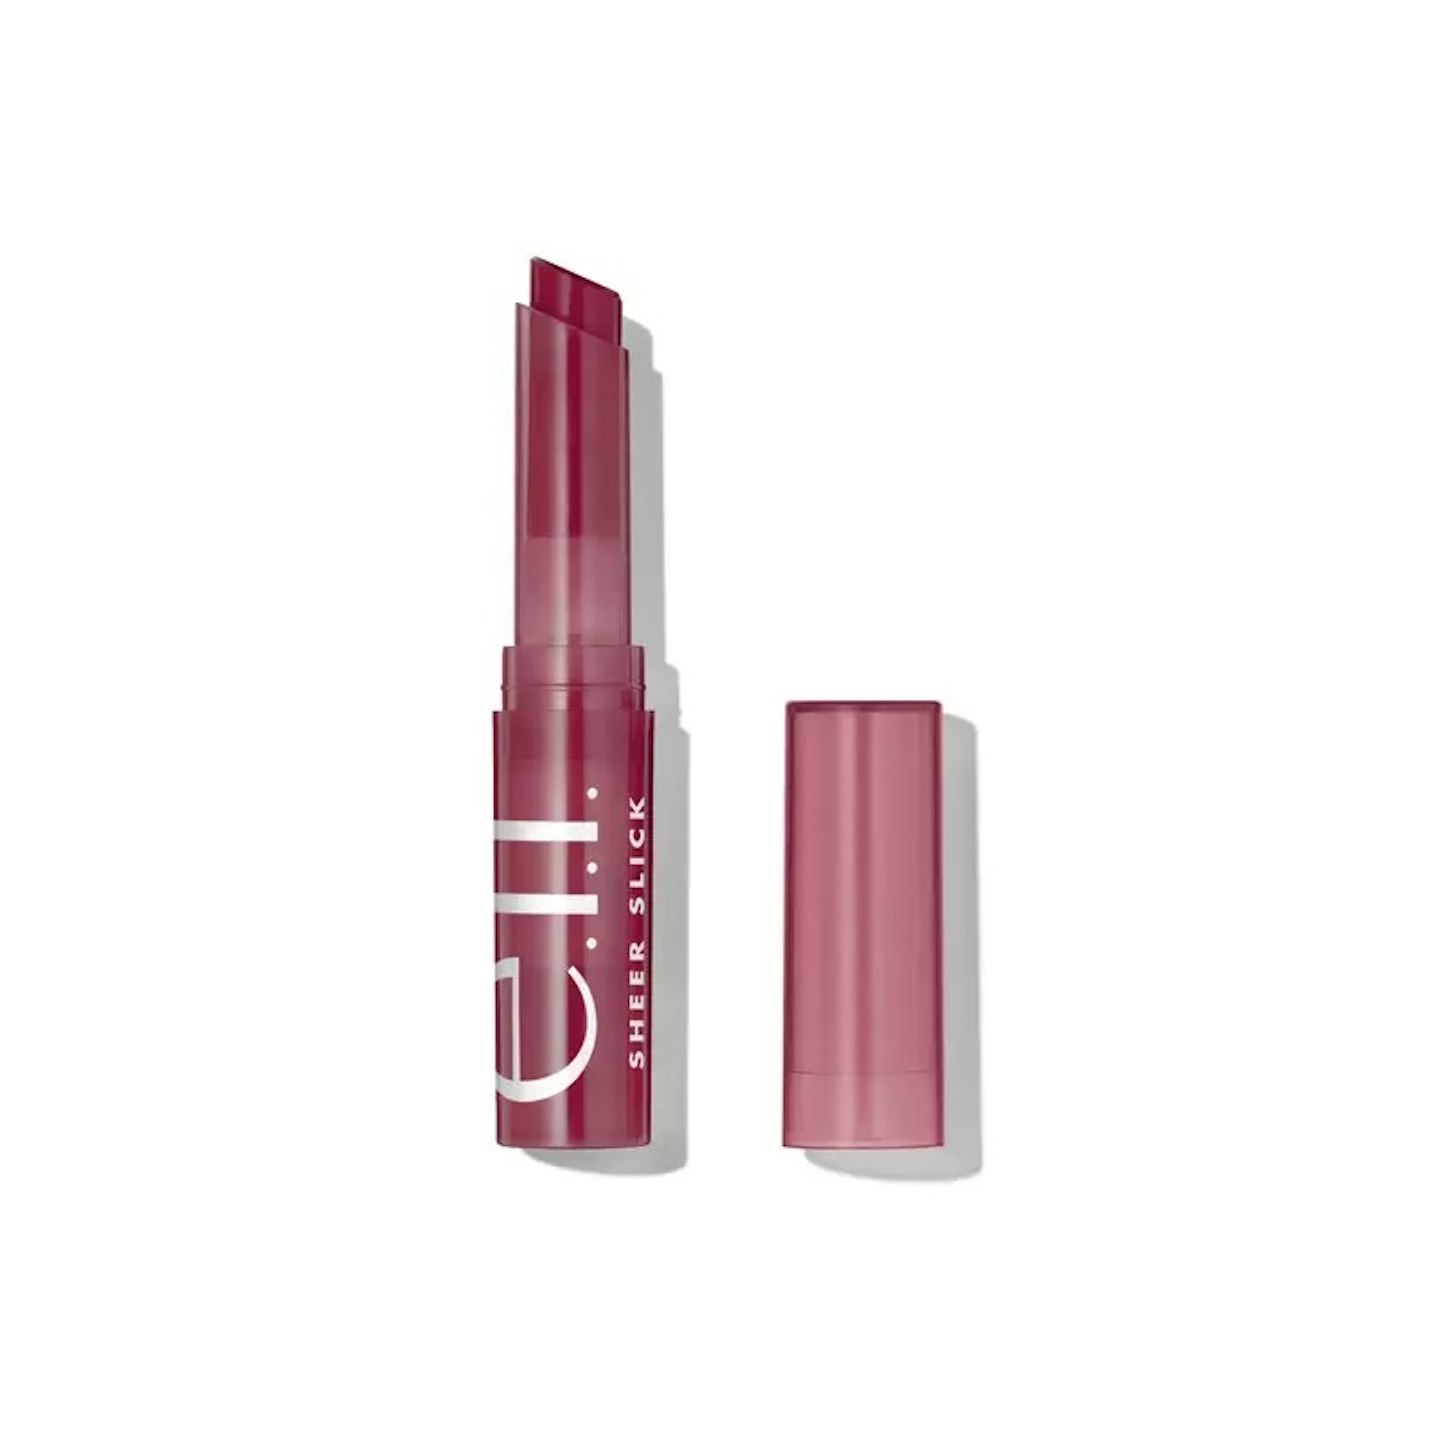 E.L.F Cosmetics Sheer Slick Lipstick in Black Cherry 